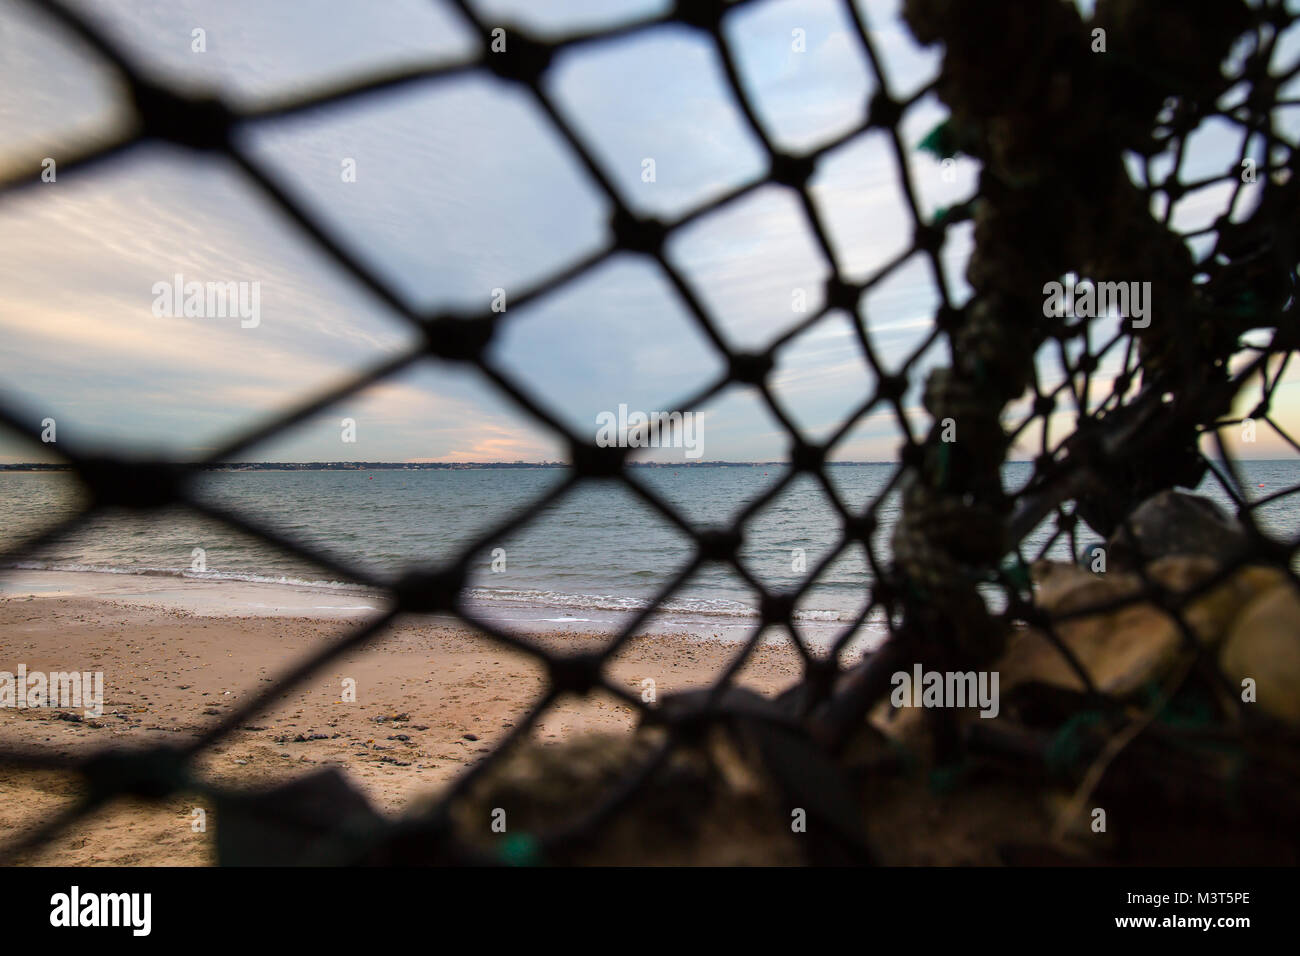 Vue sur une plage déserte à la recherche à travers le soft-focus la compensation d'une vieille, vide, abandonné lobster pot vers le rivage par la marée. Coucher du soleil épaves Banque D'Images